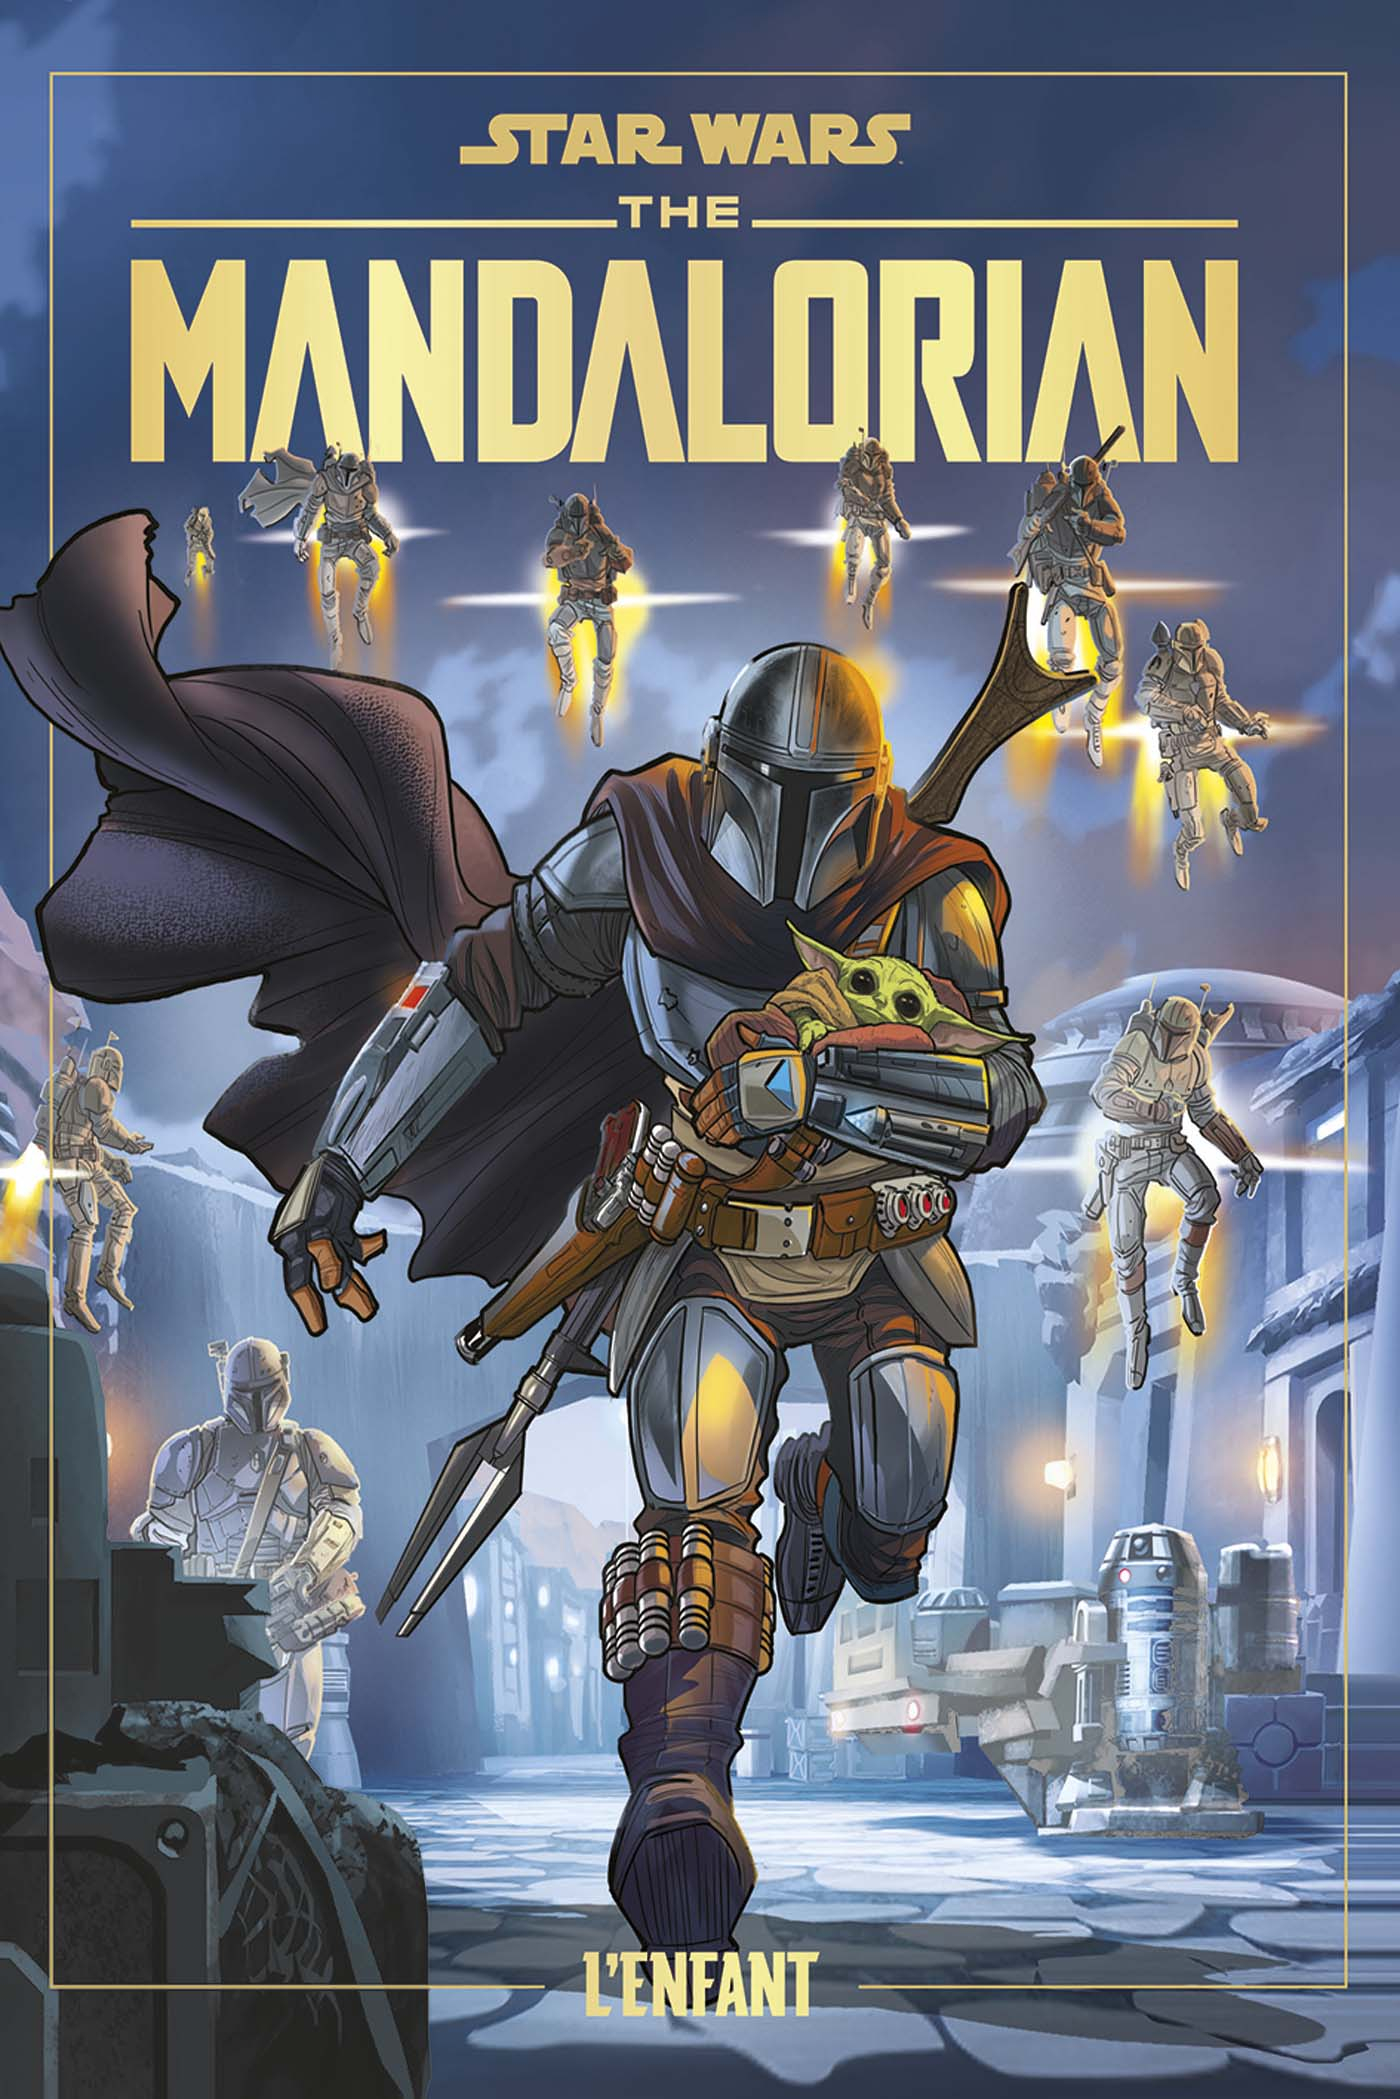 Star Wars - Mandalorian T01 (VF)